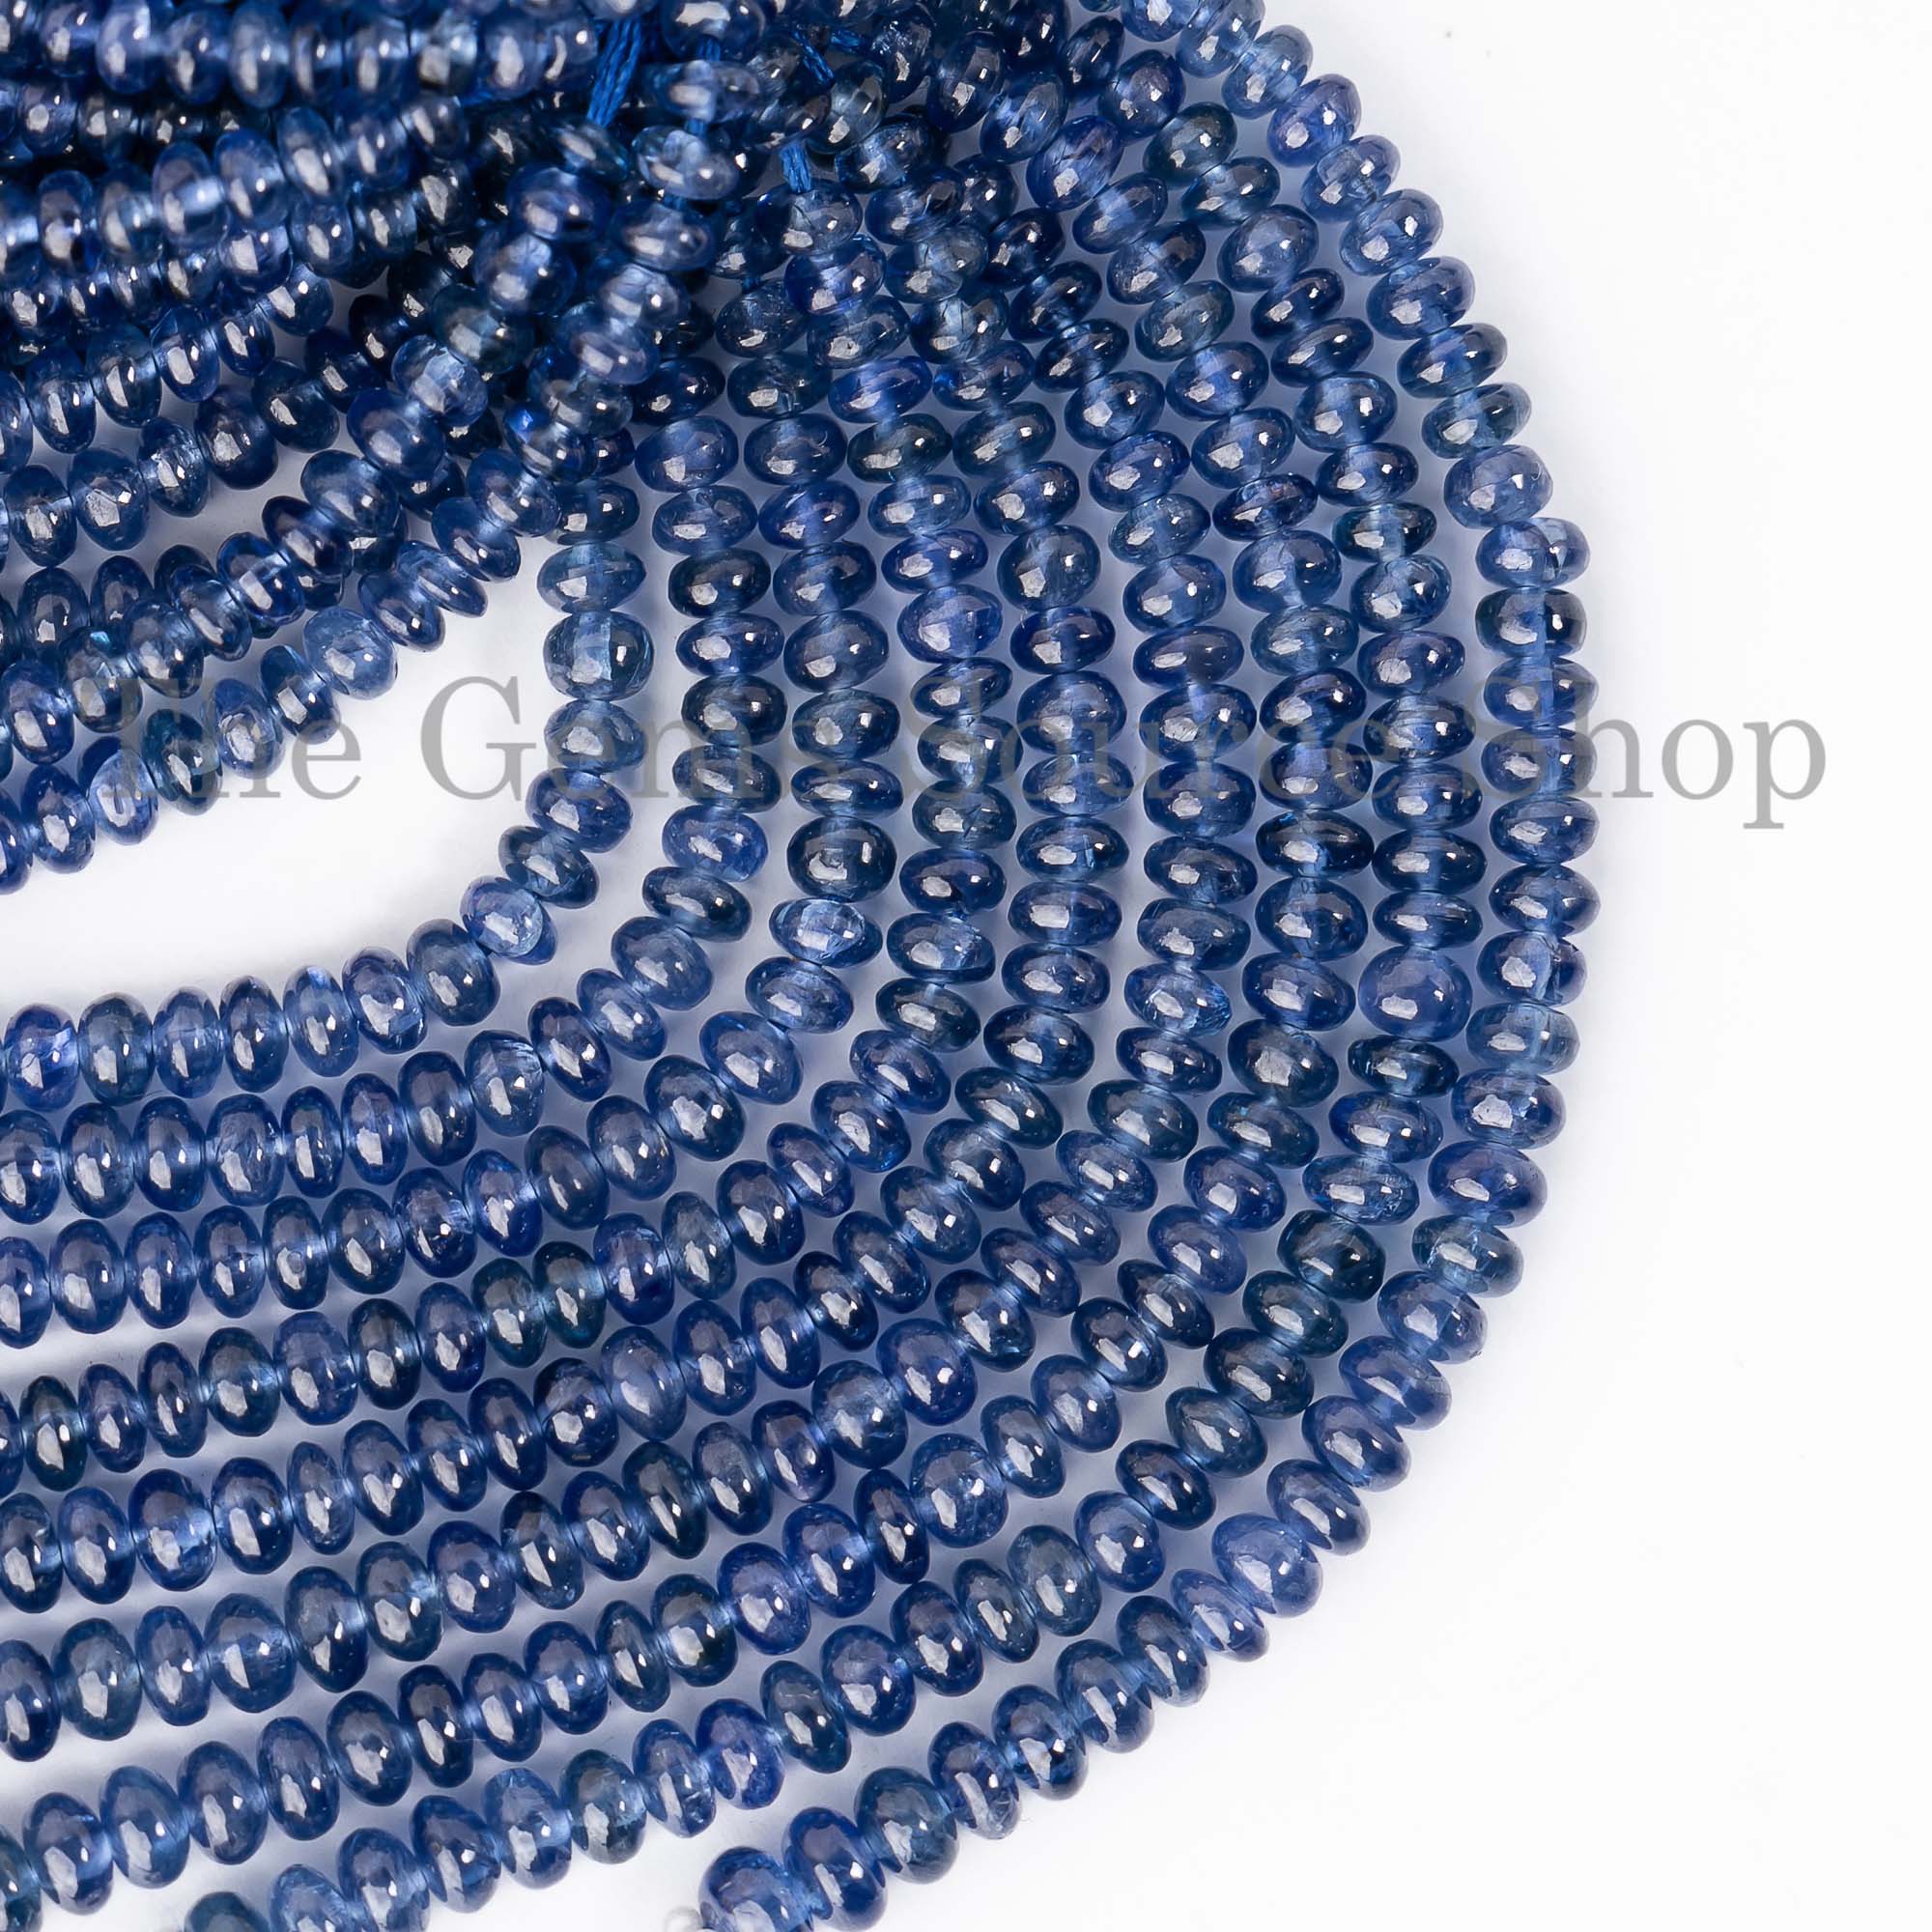 Natural Burmese Blue Sapphire Beads, Blue Sapphire Smooth Beads, Blue Sapphire Rondelle Beads